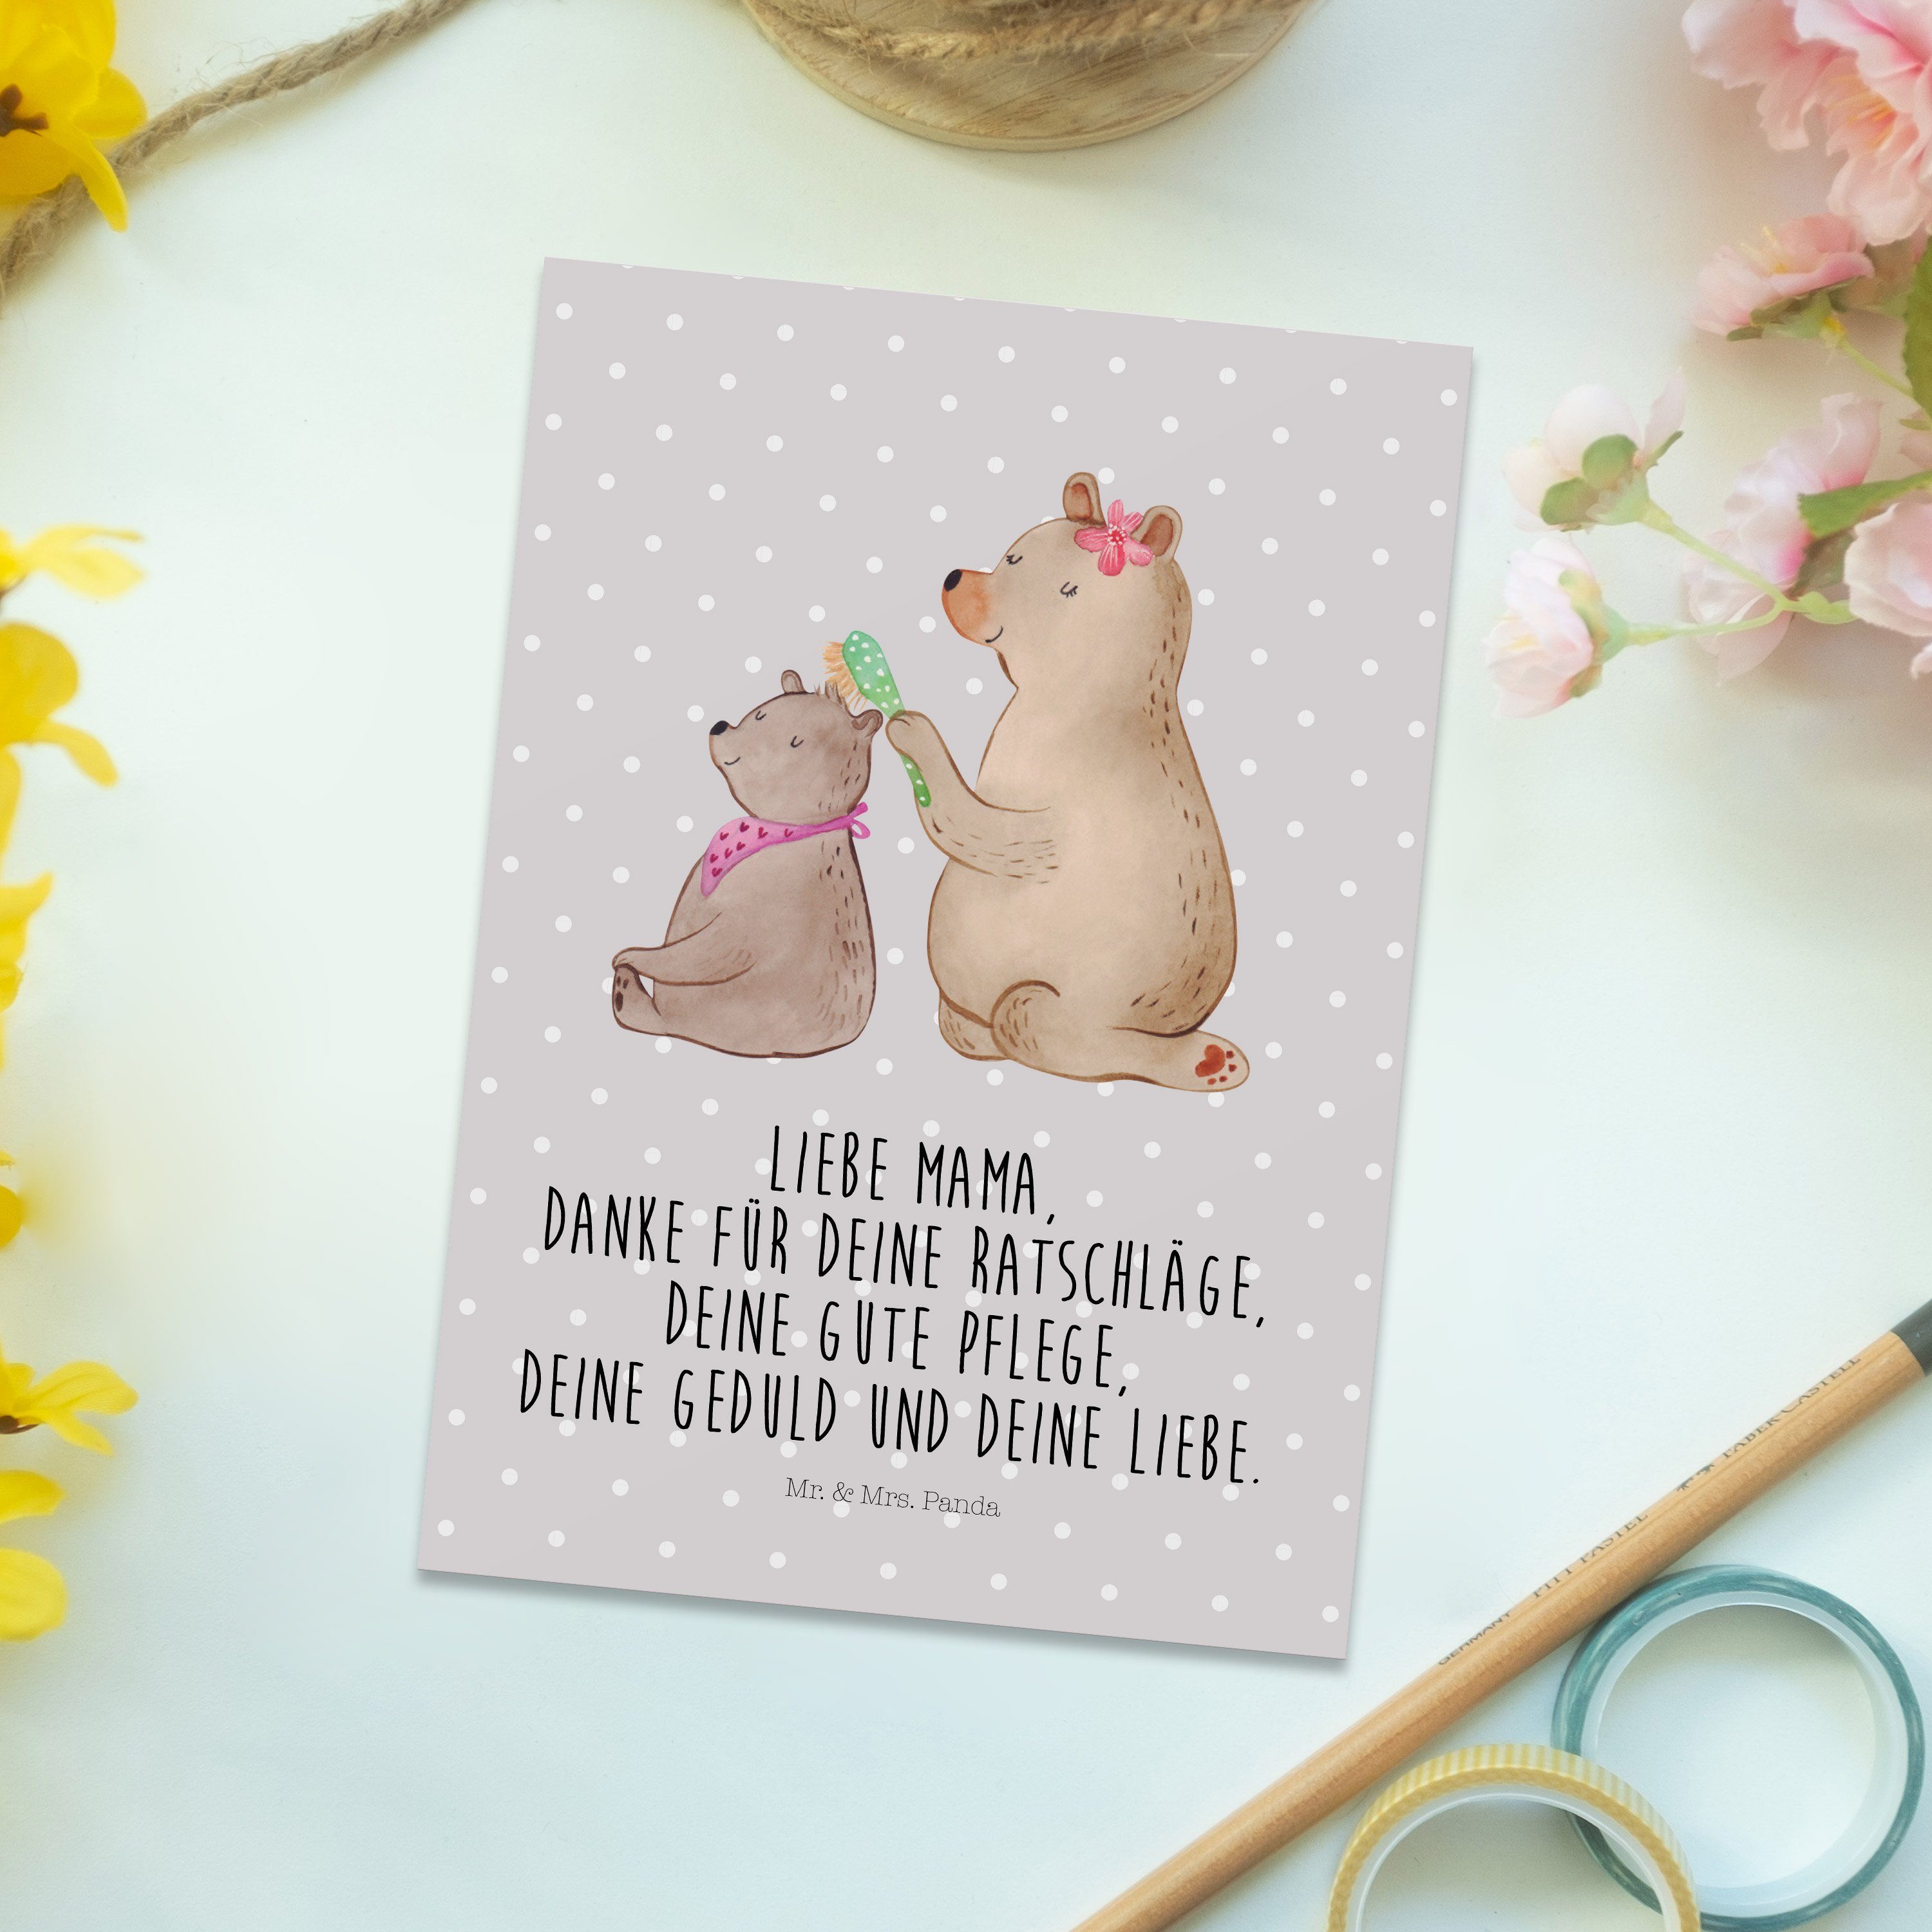 Mr. & Mrs. Panda Grau Ges - Pastell mit - Bär Postkarte Einladungskarte, Geschenk, Kind Familie